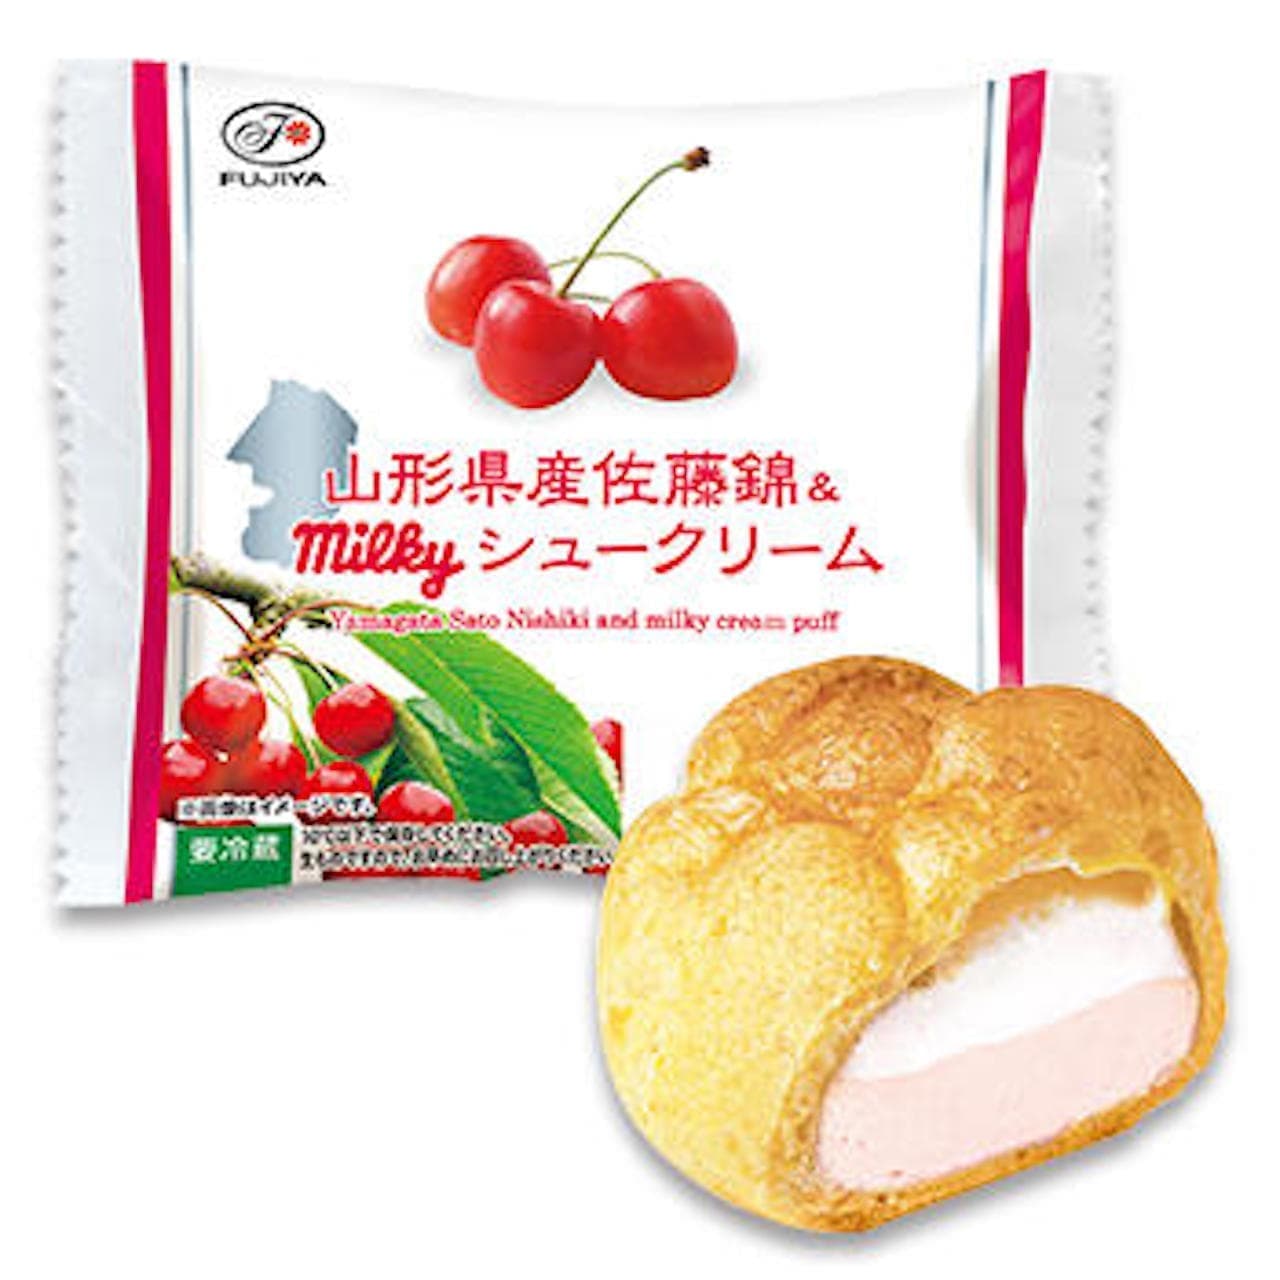 Fujiya "Yamagata Sato Nishiki & Milky Cream Puff".